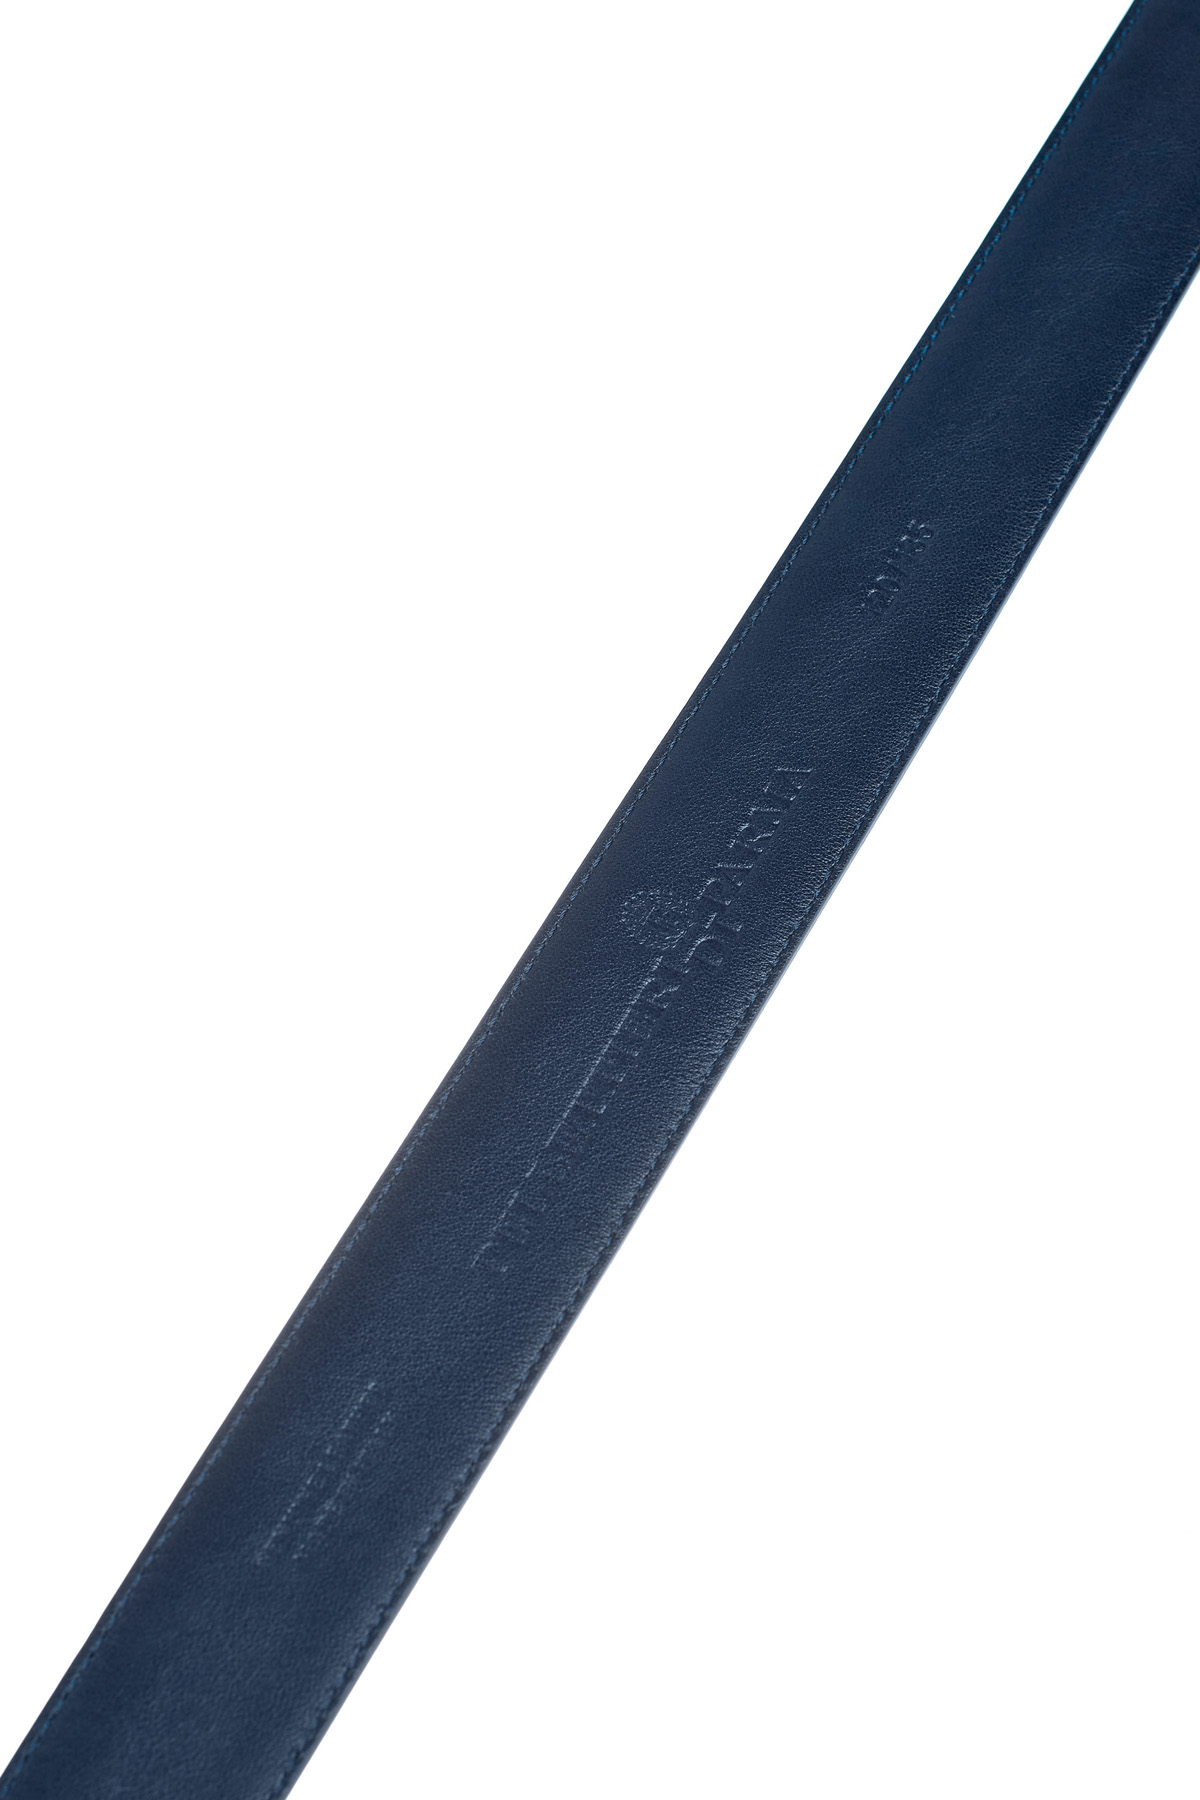 Кожаный ремень в оттенке индиго с эффектом патины PELLETTIERI DI PARMA, цвет синий - фото 5